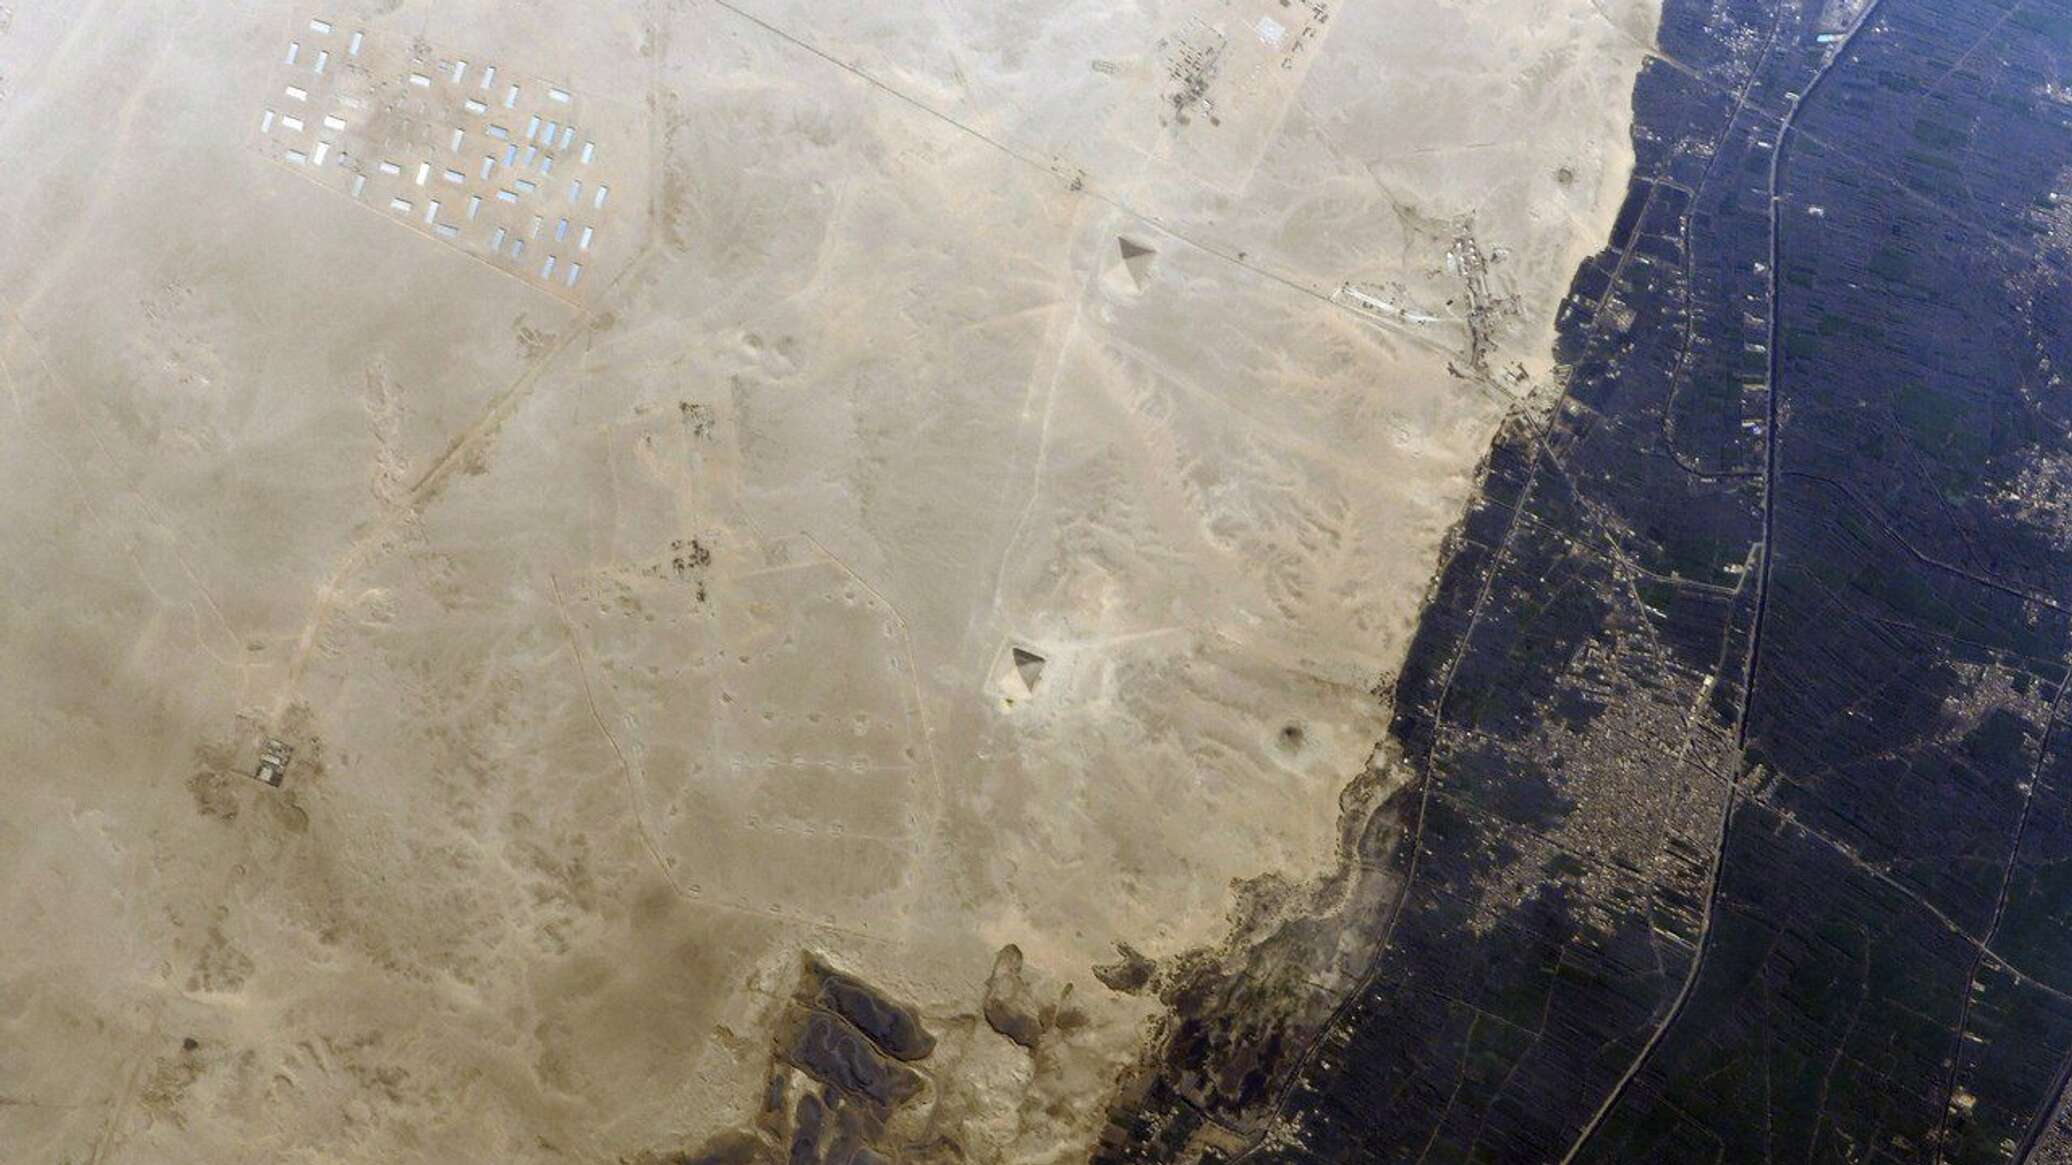 مصر تستقبل أول صورة من الفضاء عبر القمر الصناعي "نكس سات-1"